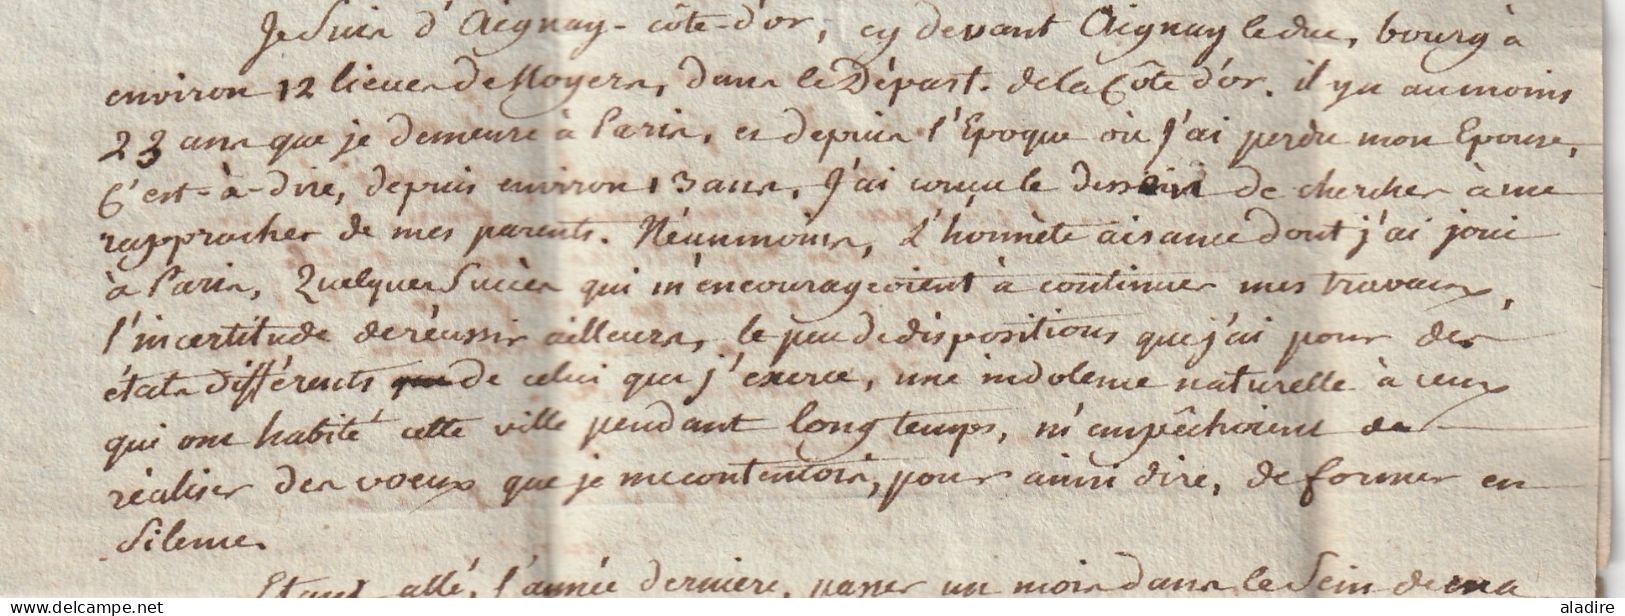 1797 - lettre pliée avec corresp serrée de 3 pages en PORT PAYE de PARIS vers Noyers, Yonne - 1ère République